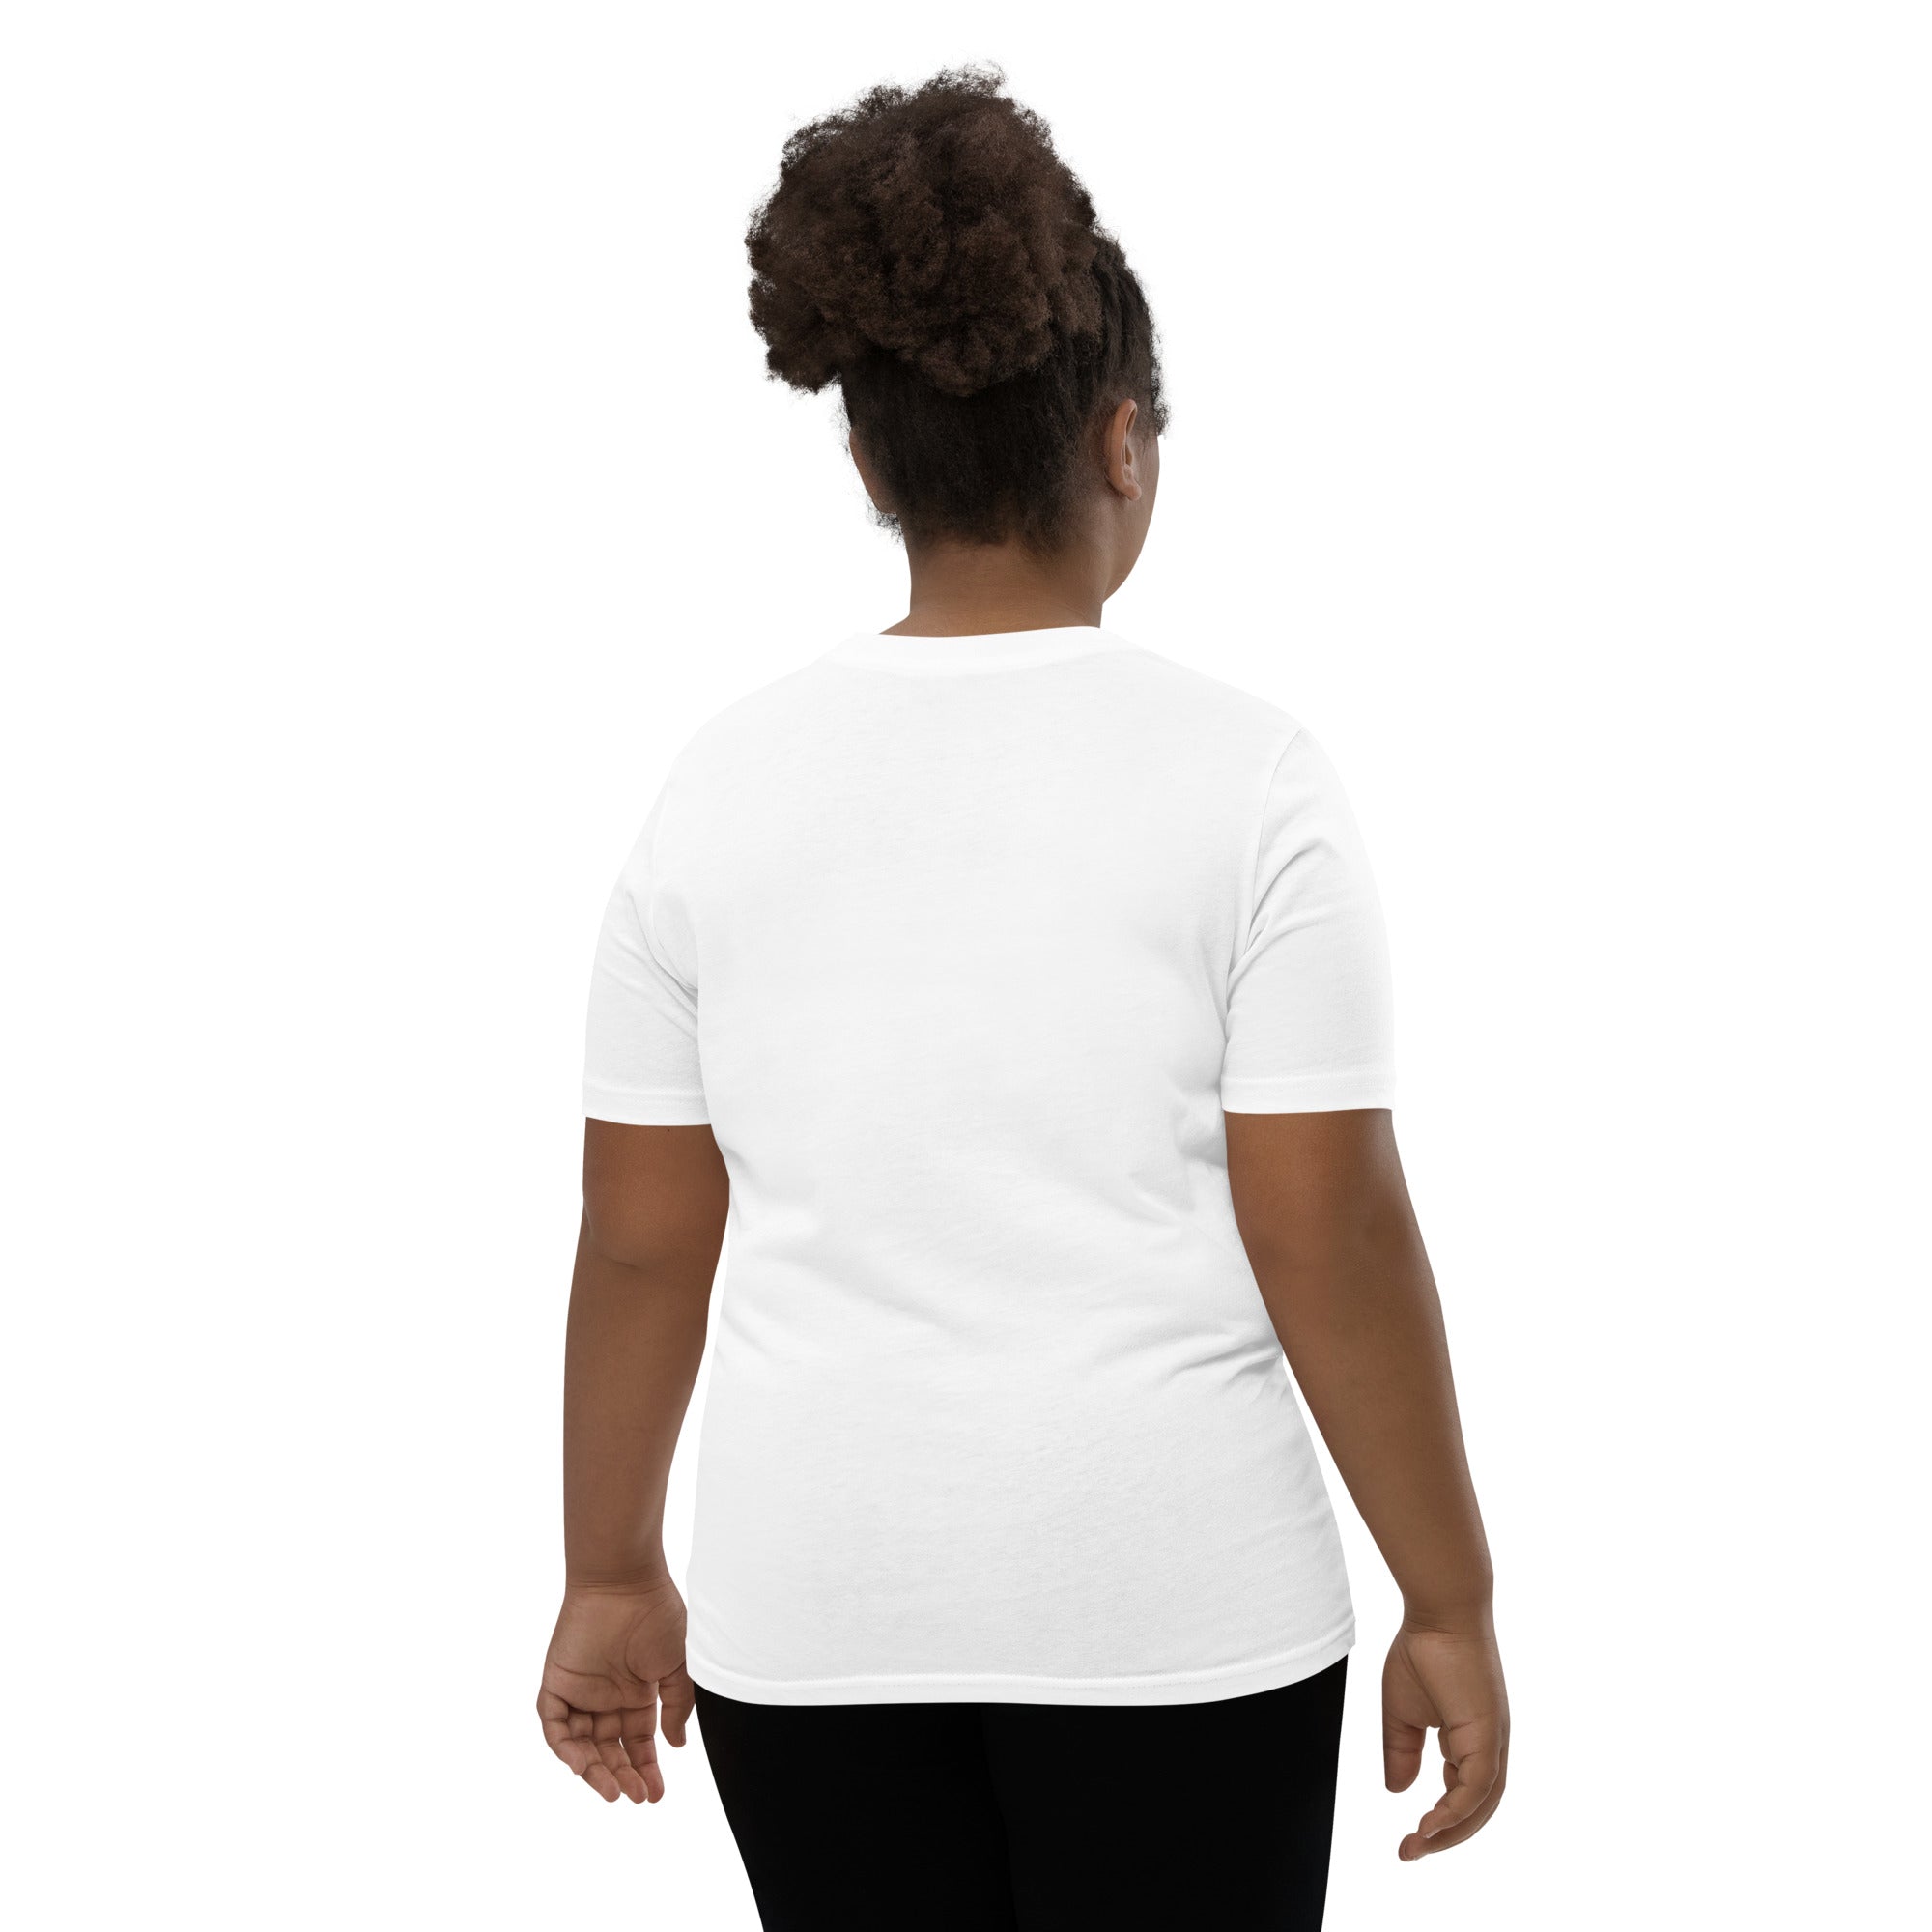 Kensington Logo R/B - White Youth Short Sleeve T-Shirt